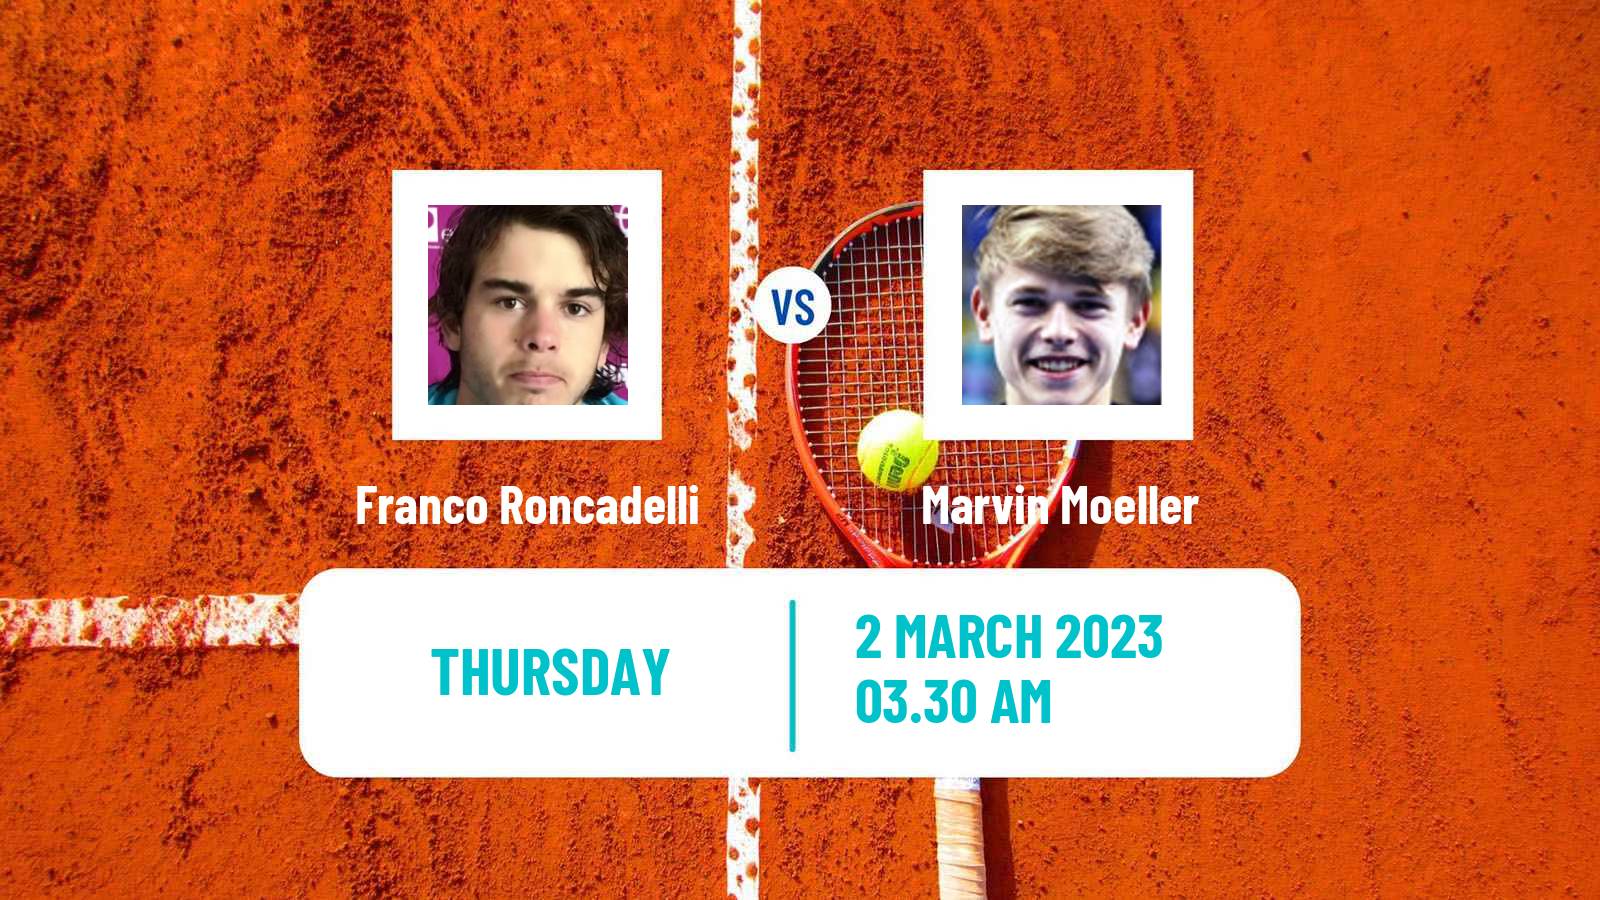 Tennis ITF Tournaments Franco Roncadelli - Marvin Moeller